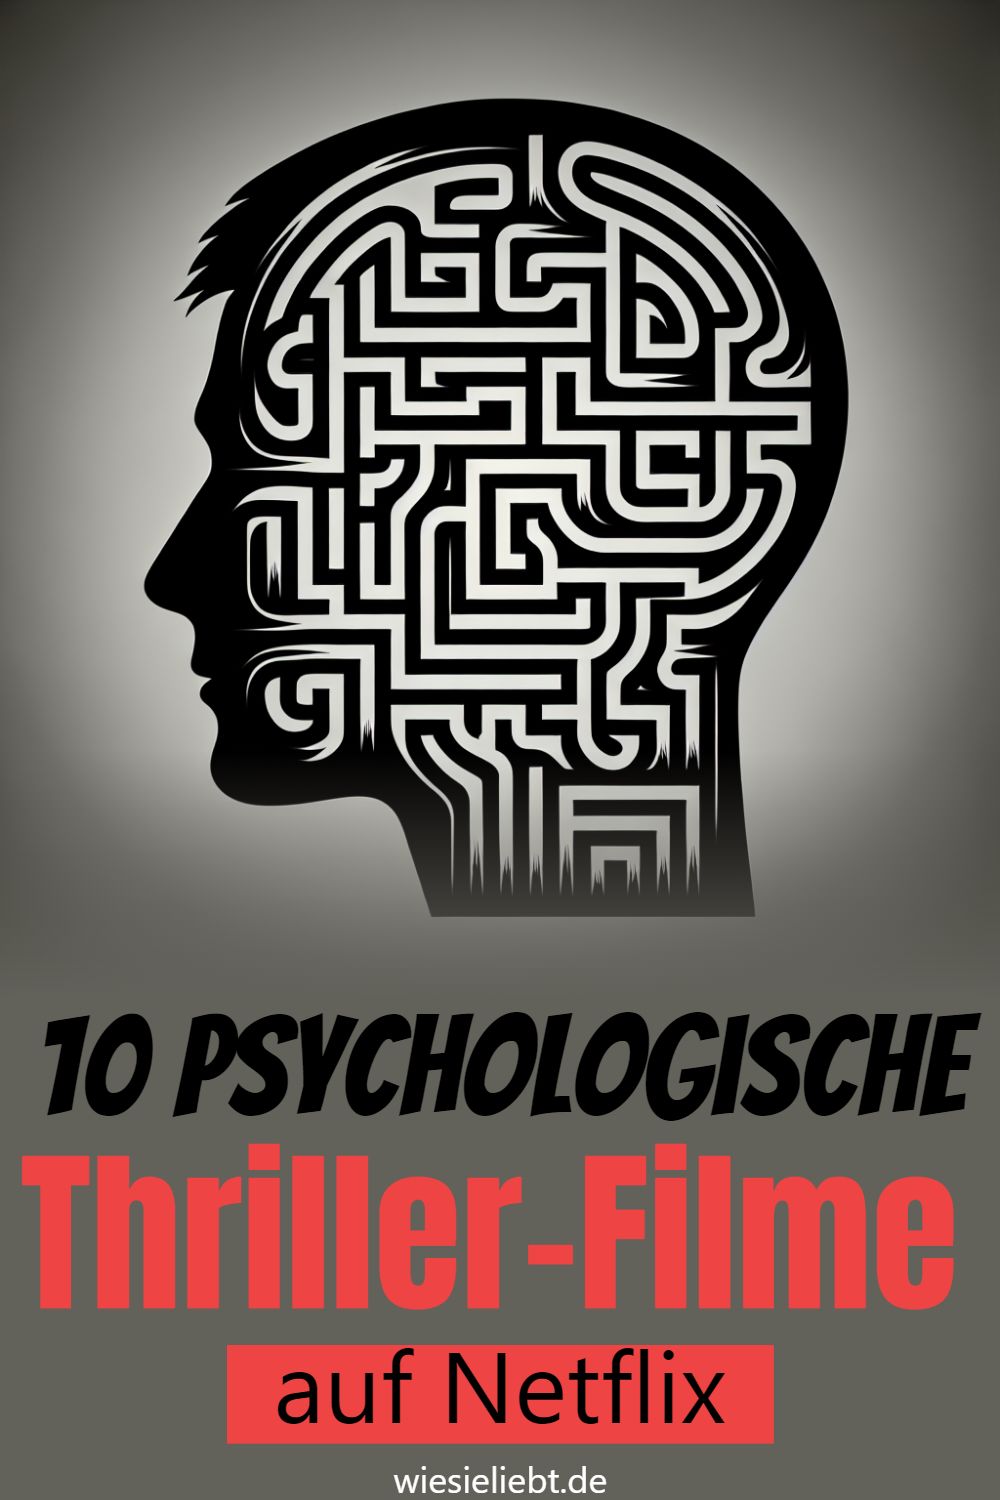 10 psychologische Thriller-Filme auf Netflix